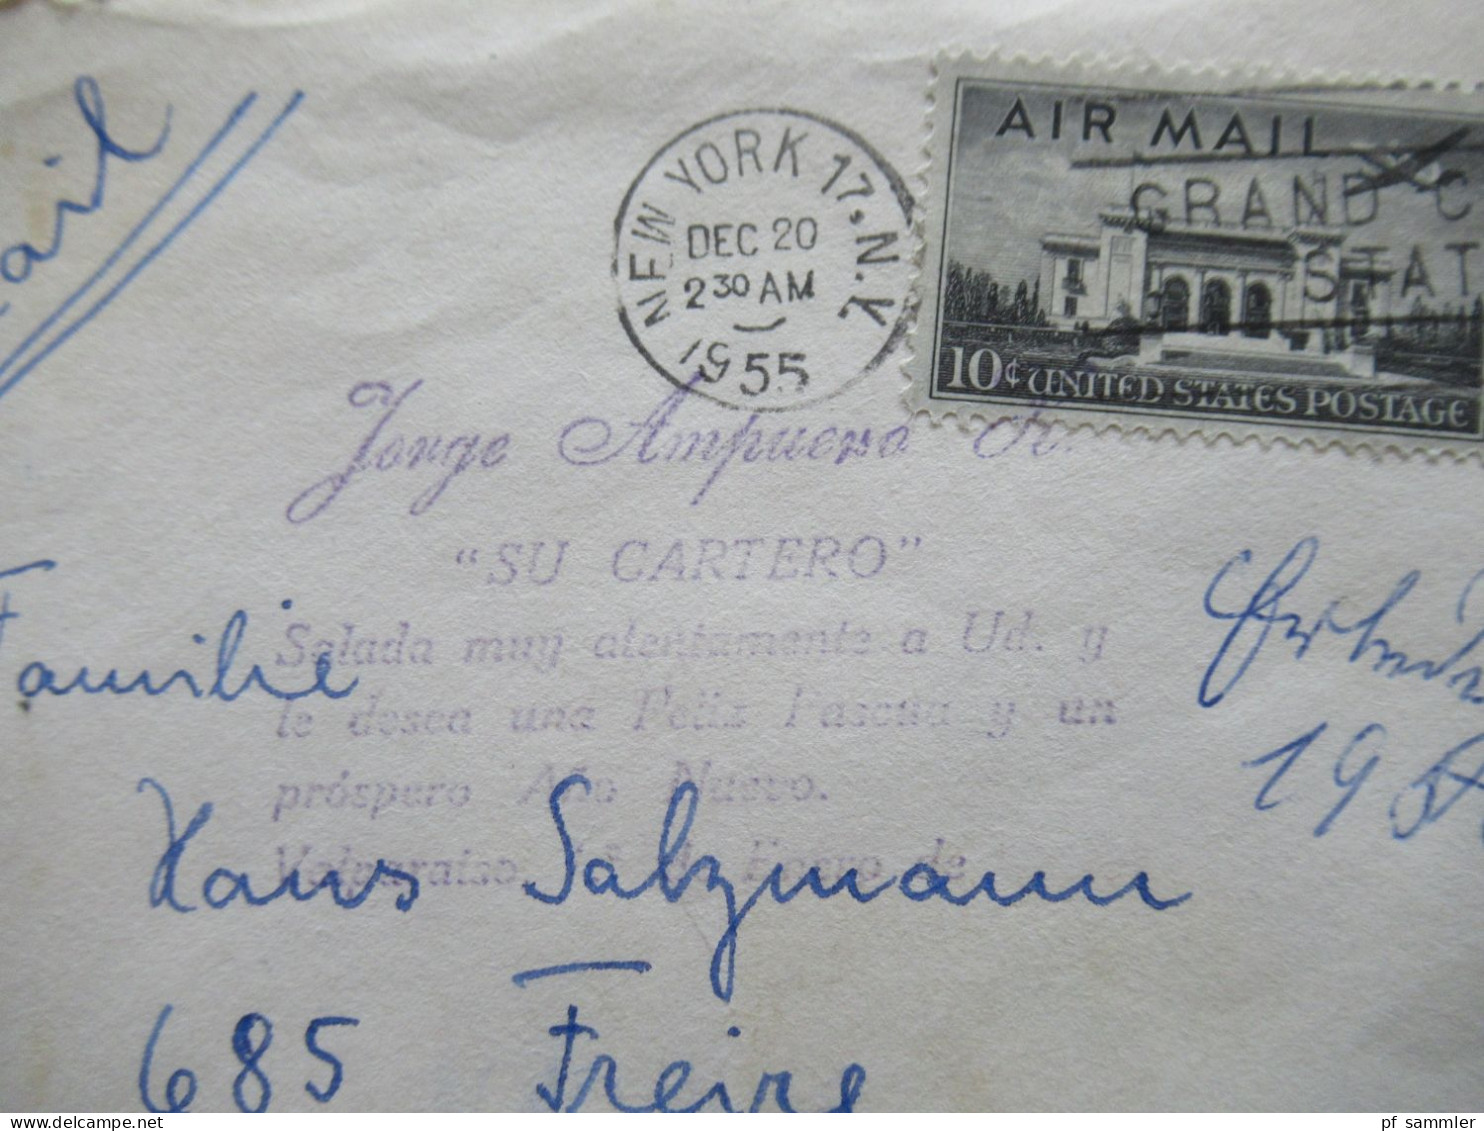 USA 1955  Mit Luftpost Air Mail Nach Valparaiso Chile / Übersee Mit Violettem Stempel Jorge Ampuero Su Cartero - Briefe U. Dokumente